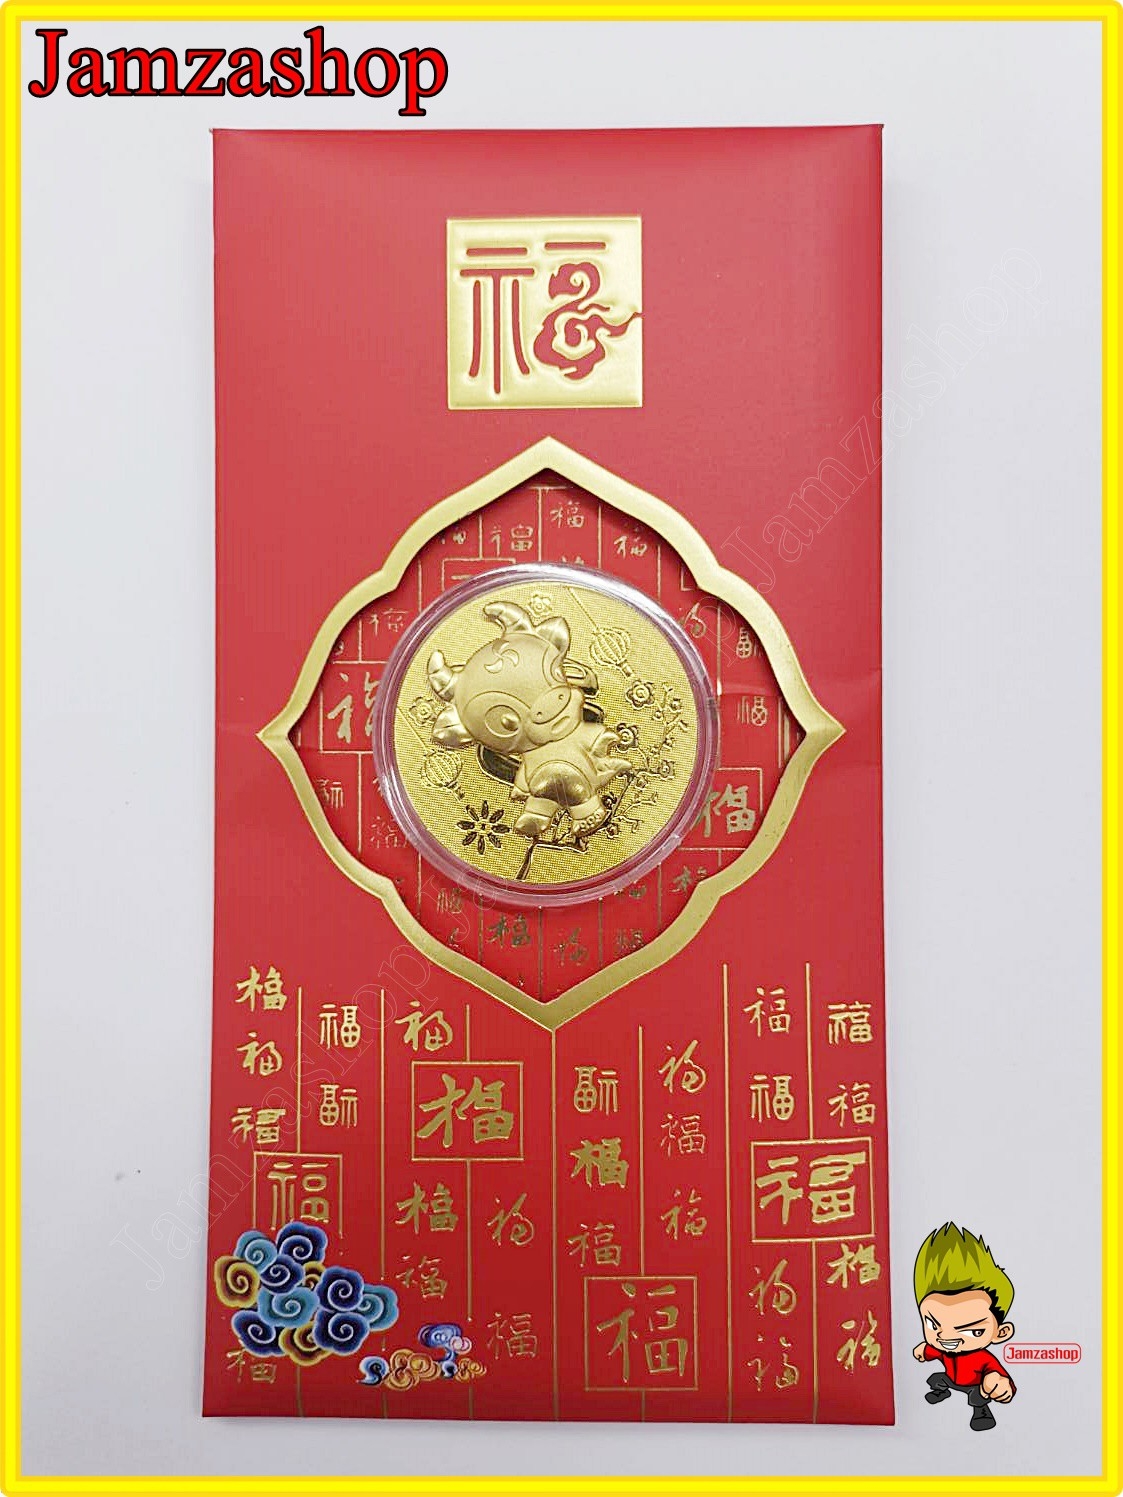 ซองอั่งเปา ซองแดง เหรียญทองปีฉลู (วัว)นำโชคปี2564  ซองสีแดง มอบของขวัญ ของที่ระลึก วันปีใหม่ วันตรุษจีน